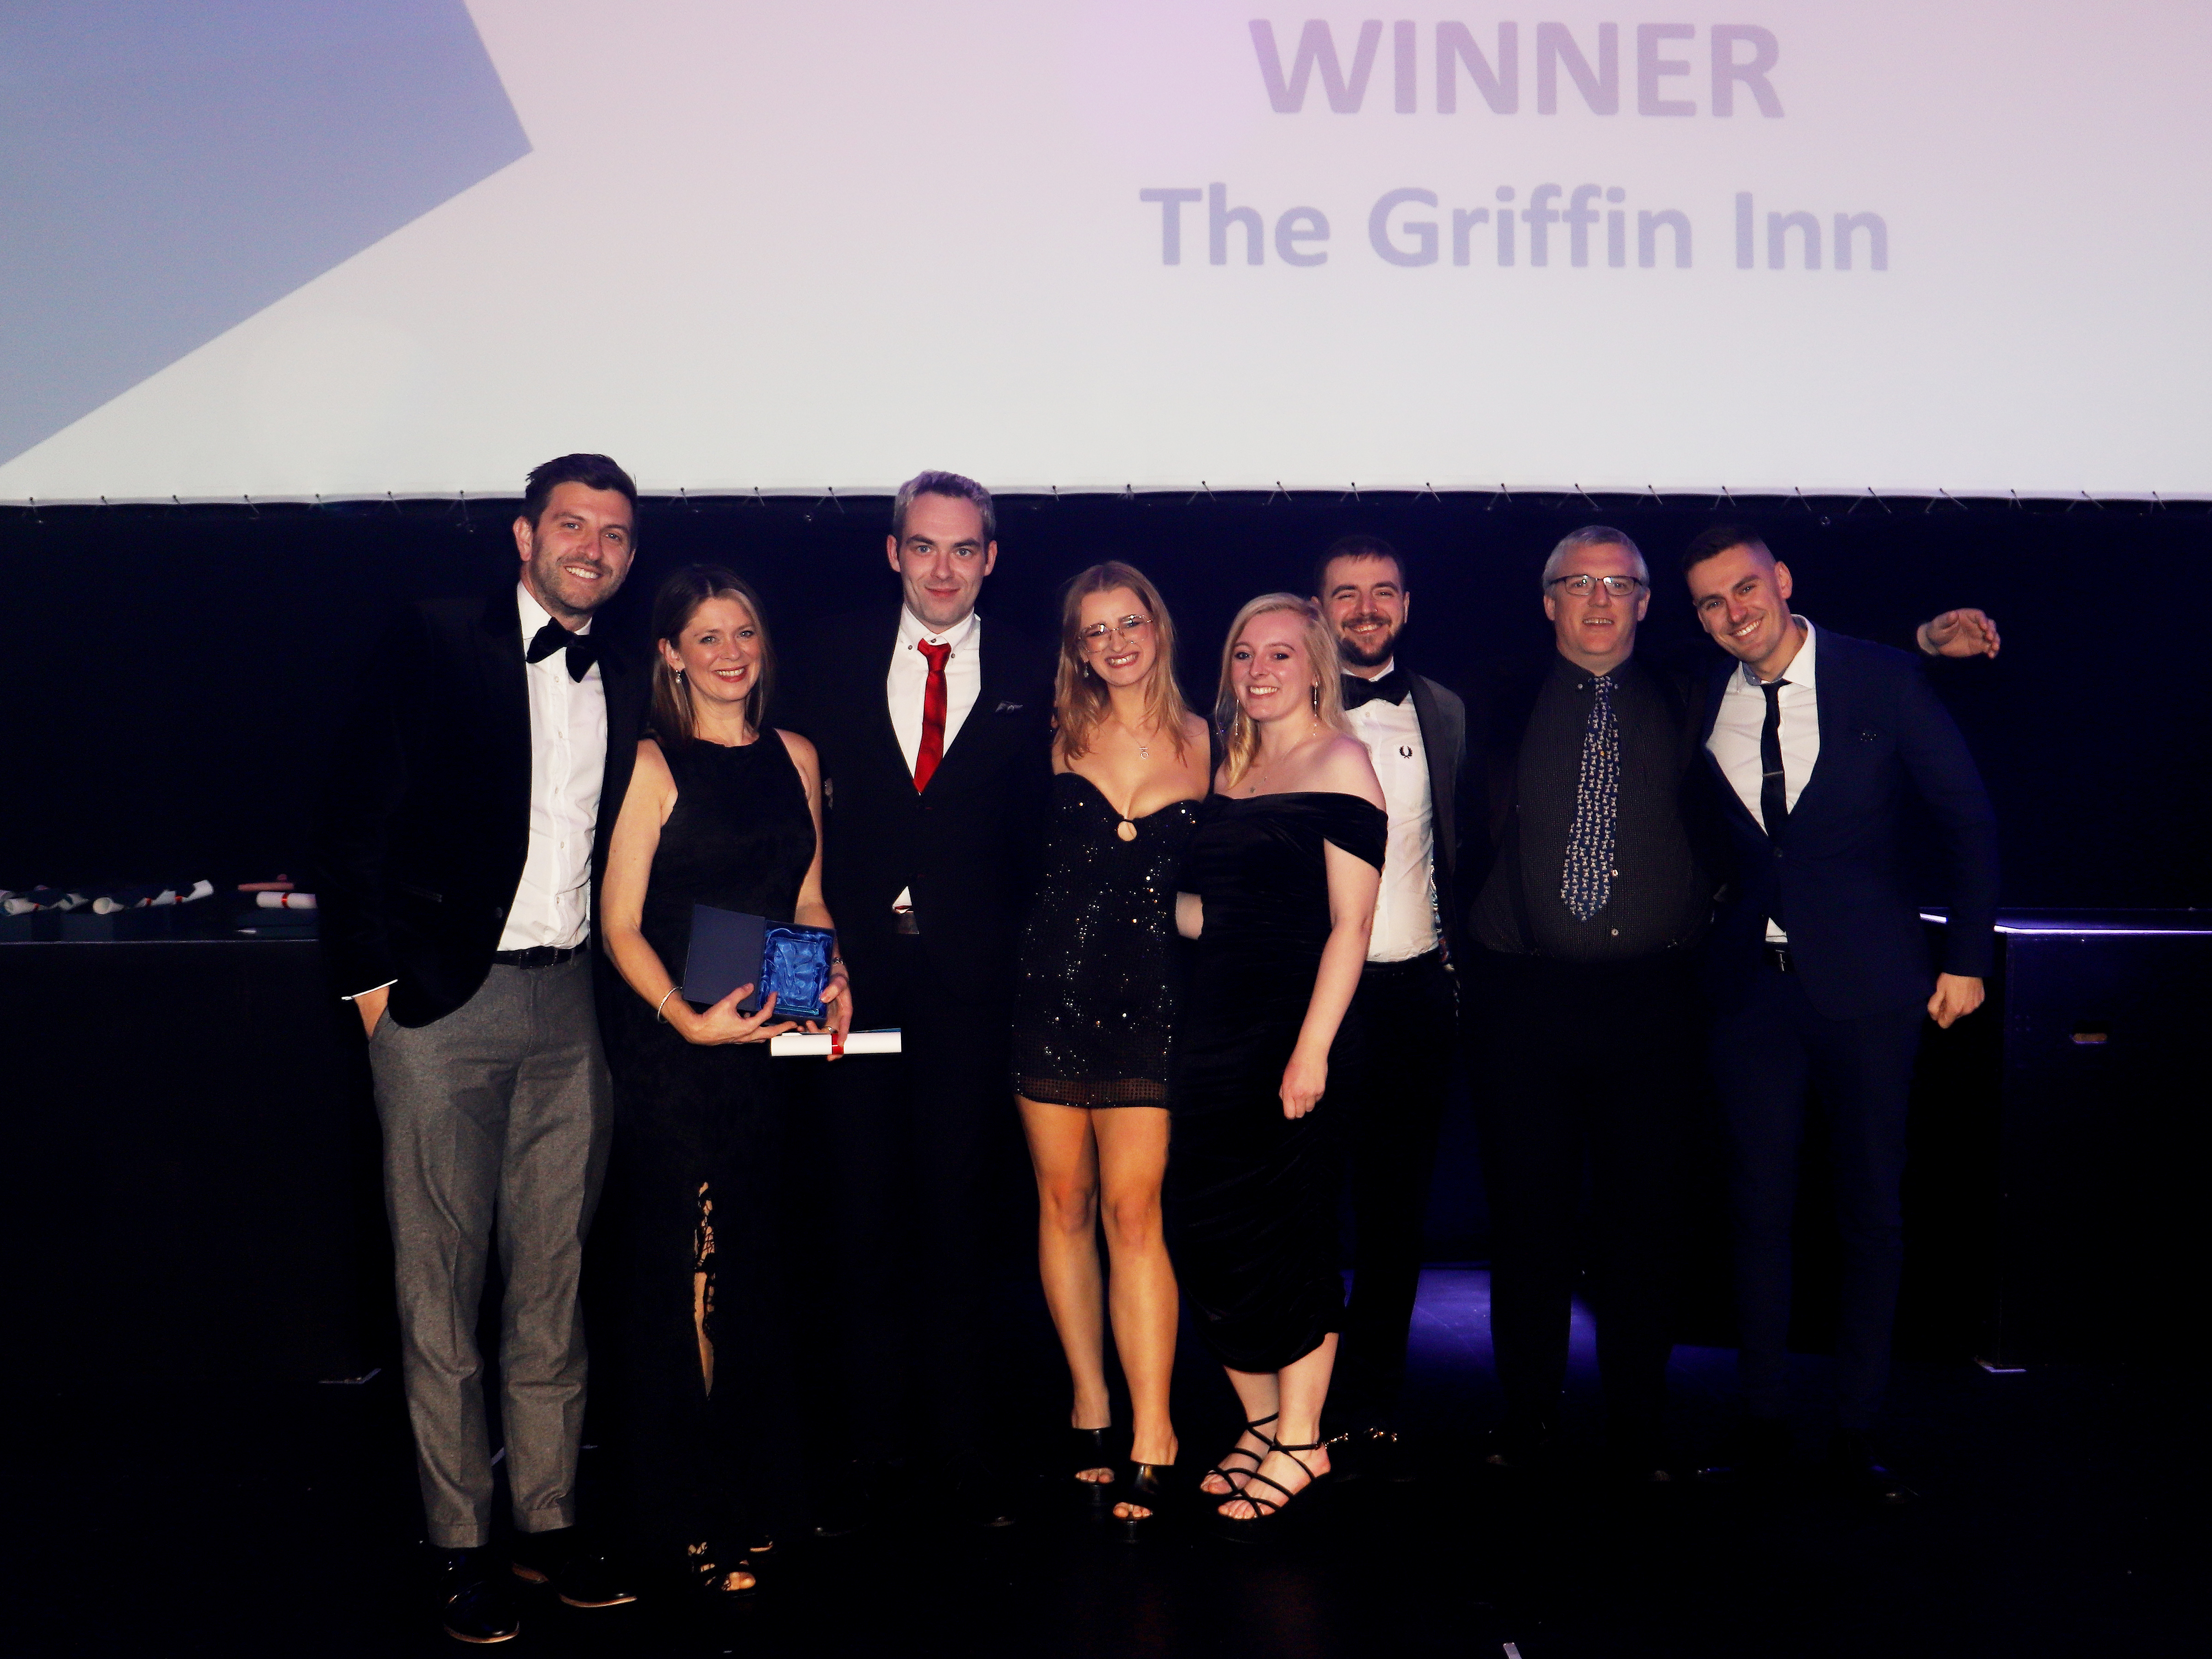 The Griffin Inn - WINNER - Best Pub